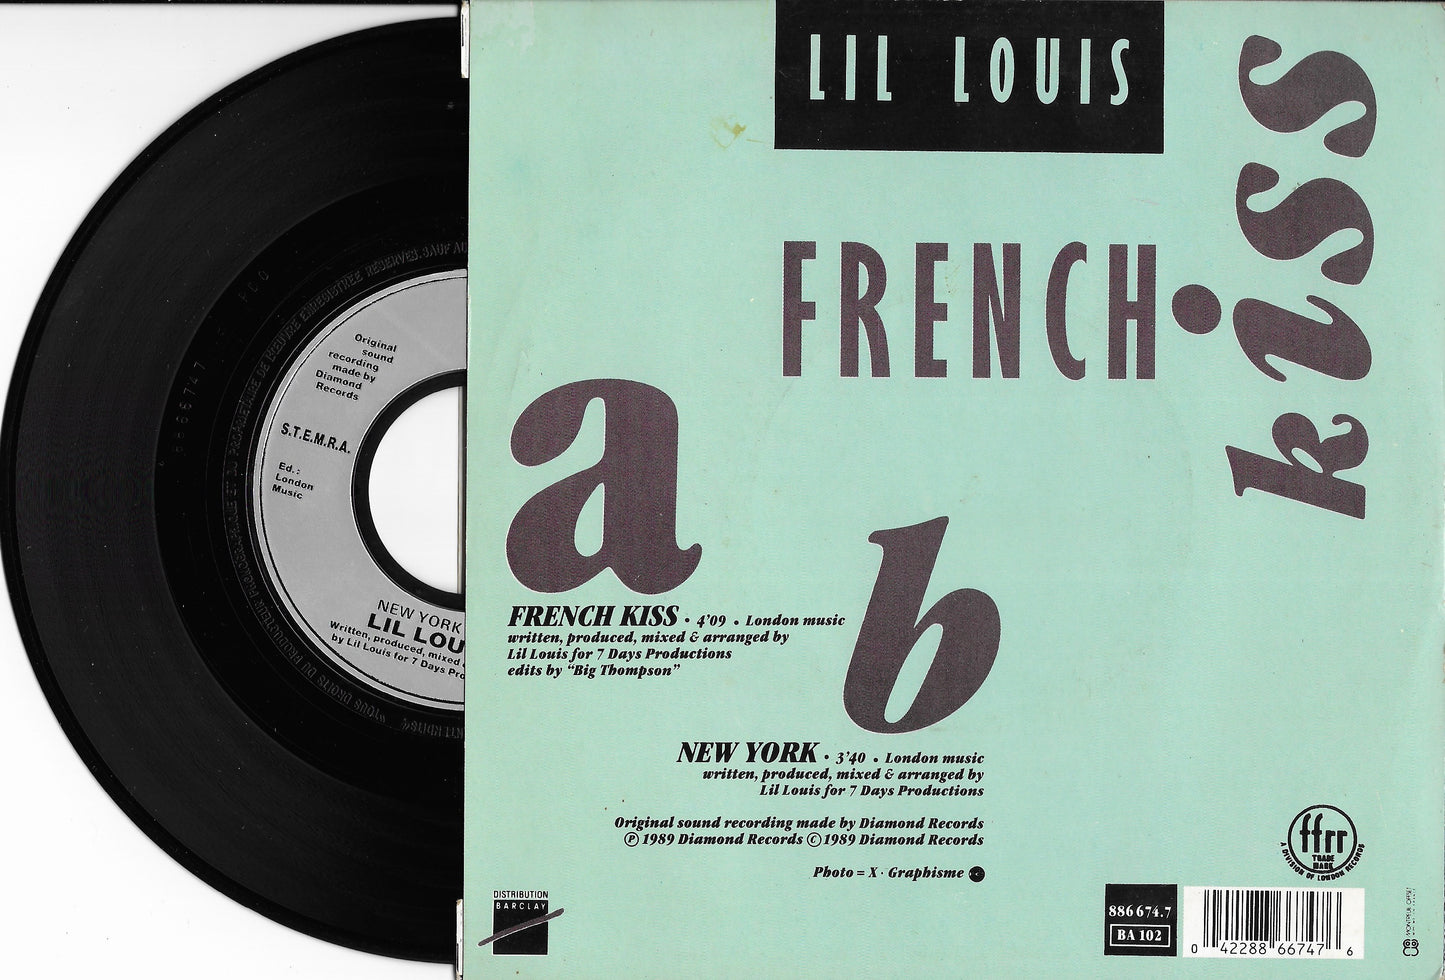 LIL LOUIS - French Kiss